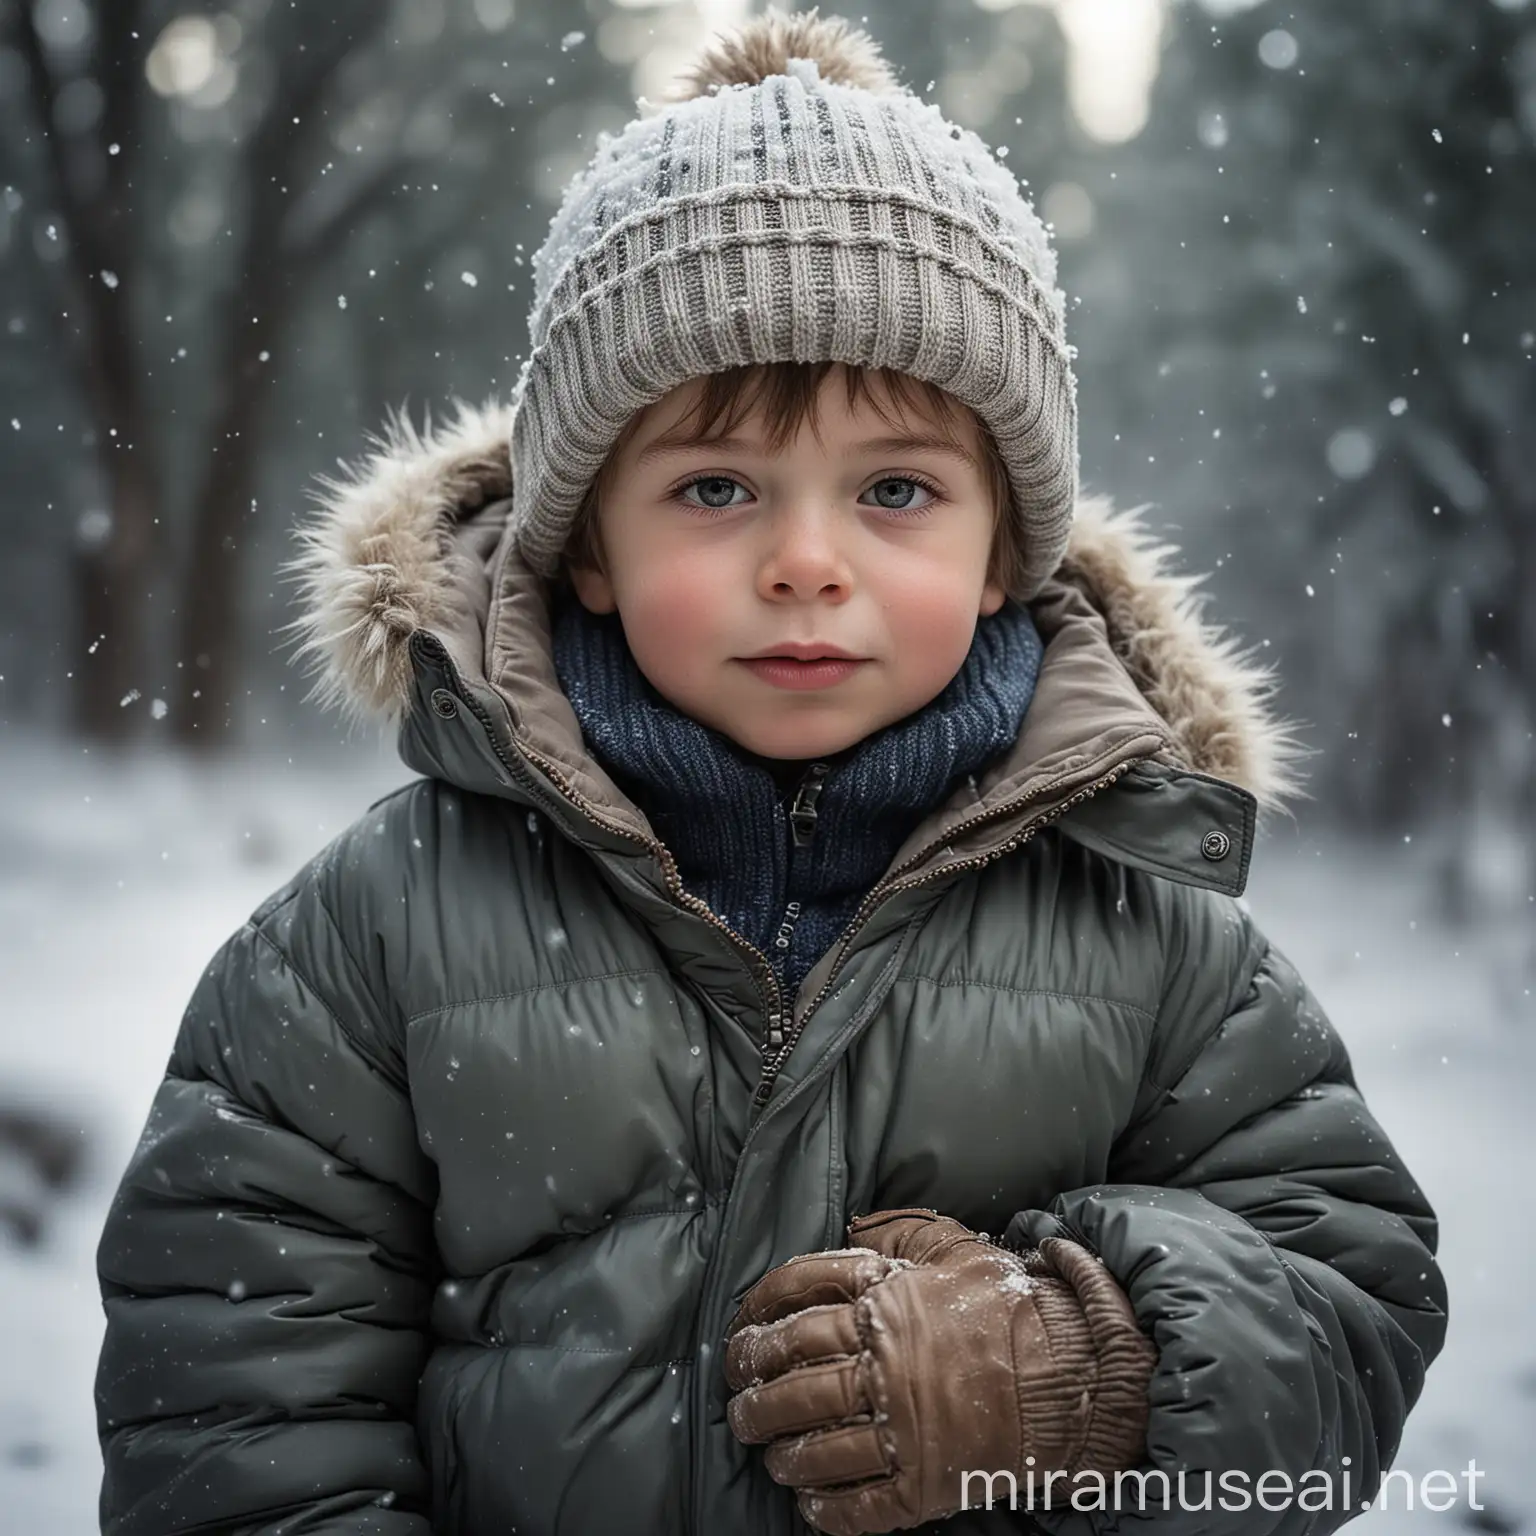 Warmly Dressed 6YearOld Boy in Snowy Winter Scene